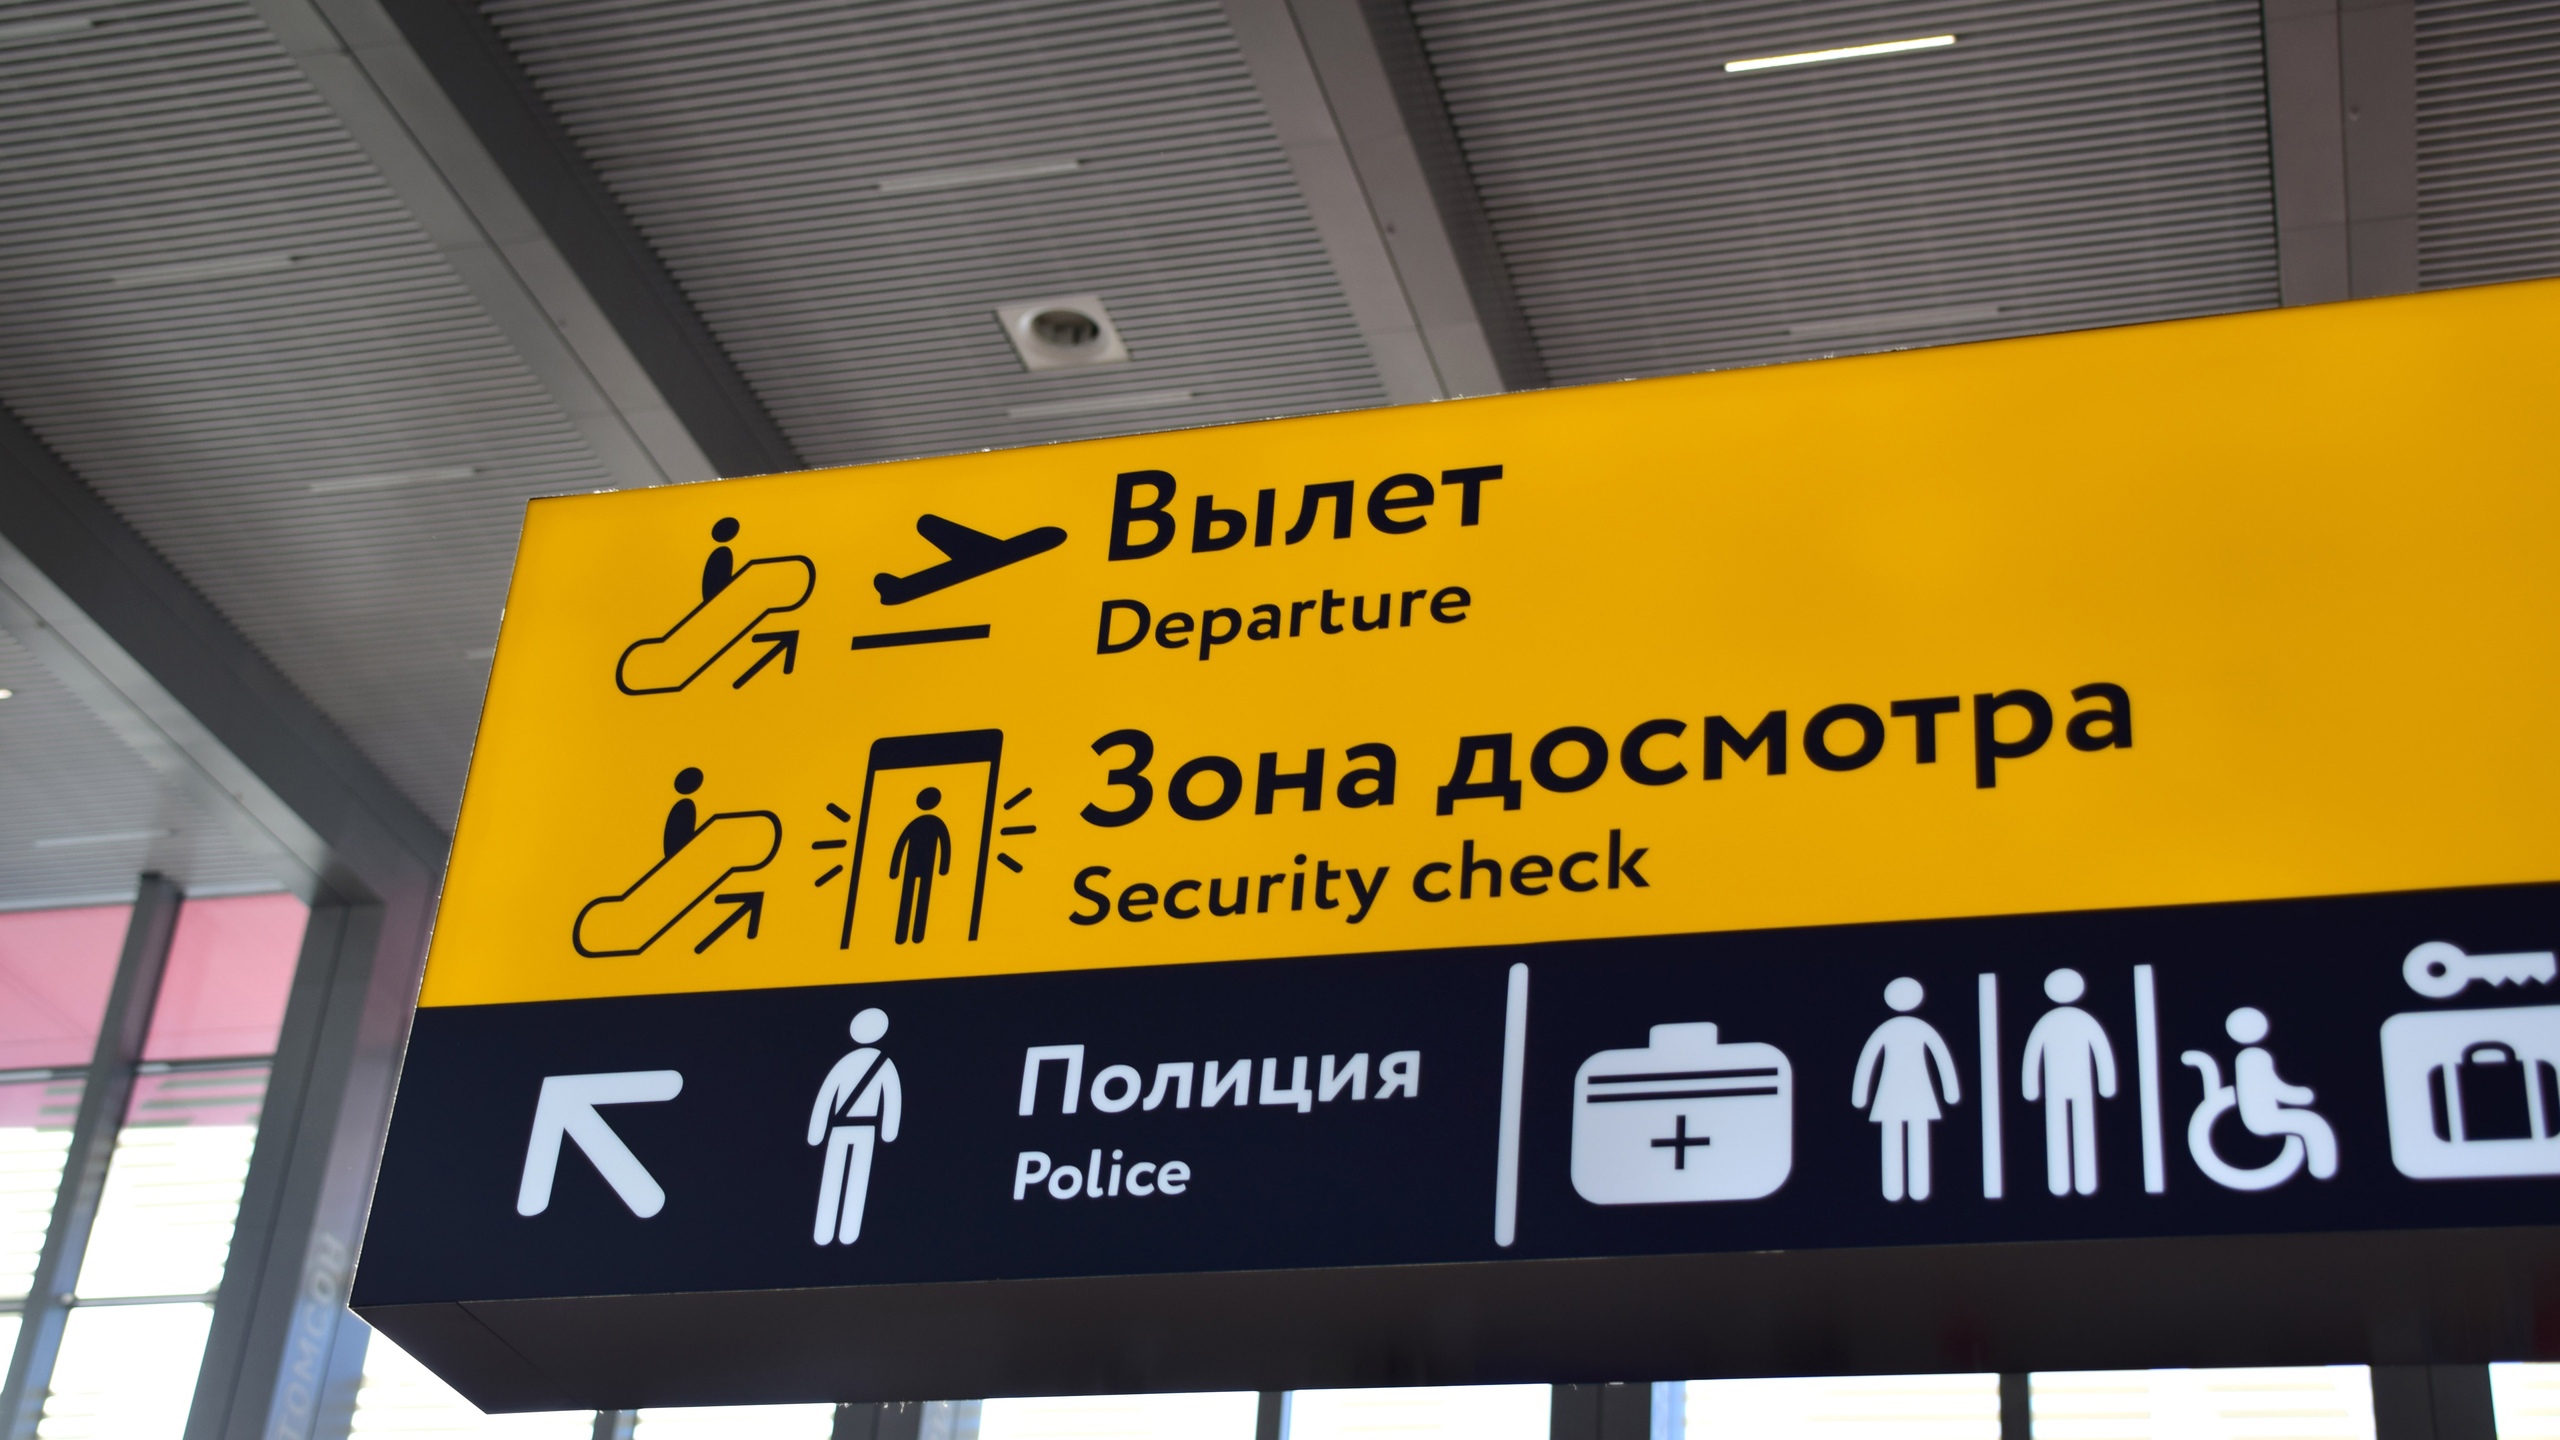 Запрещенный багаж: что находят в чемоданах и ручной клади челябинские таможенники